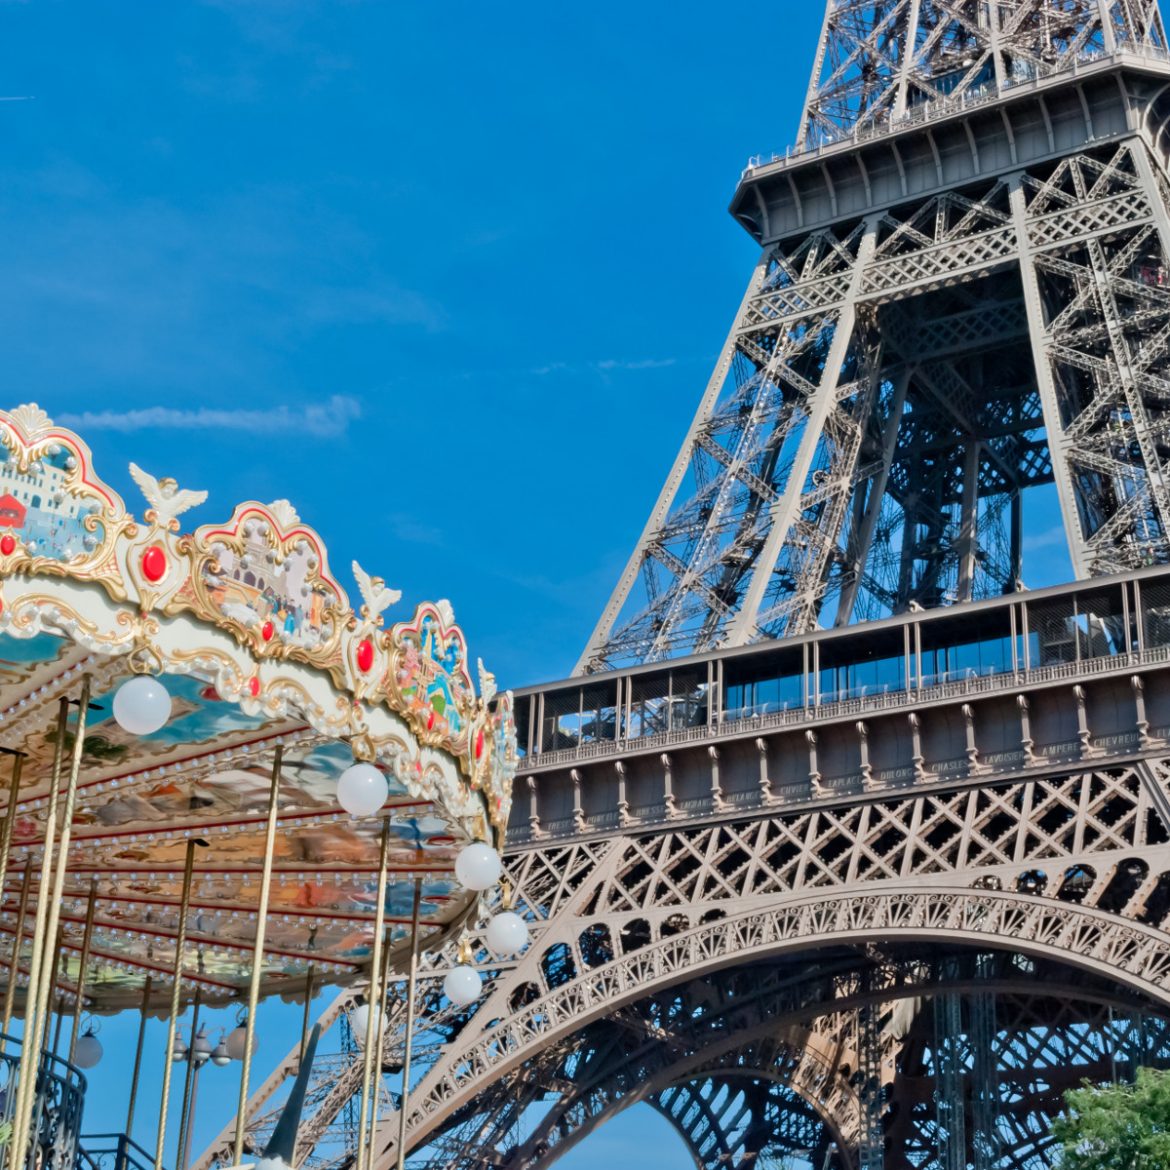 Tower Eiffel in Paris